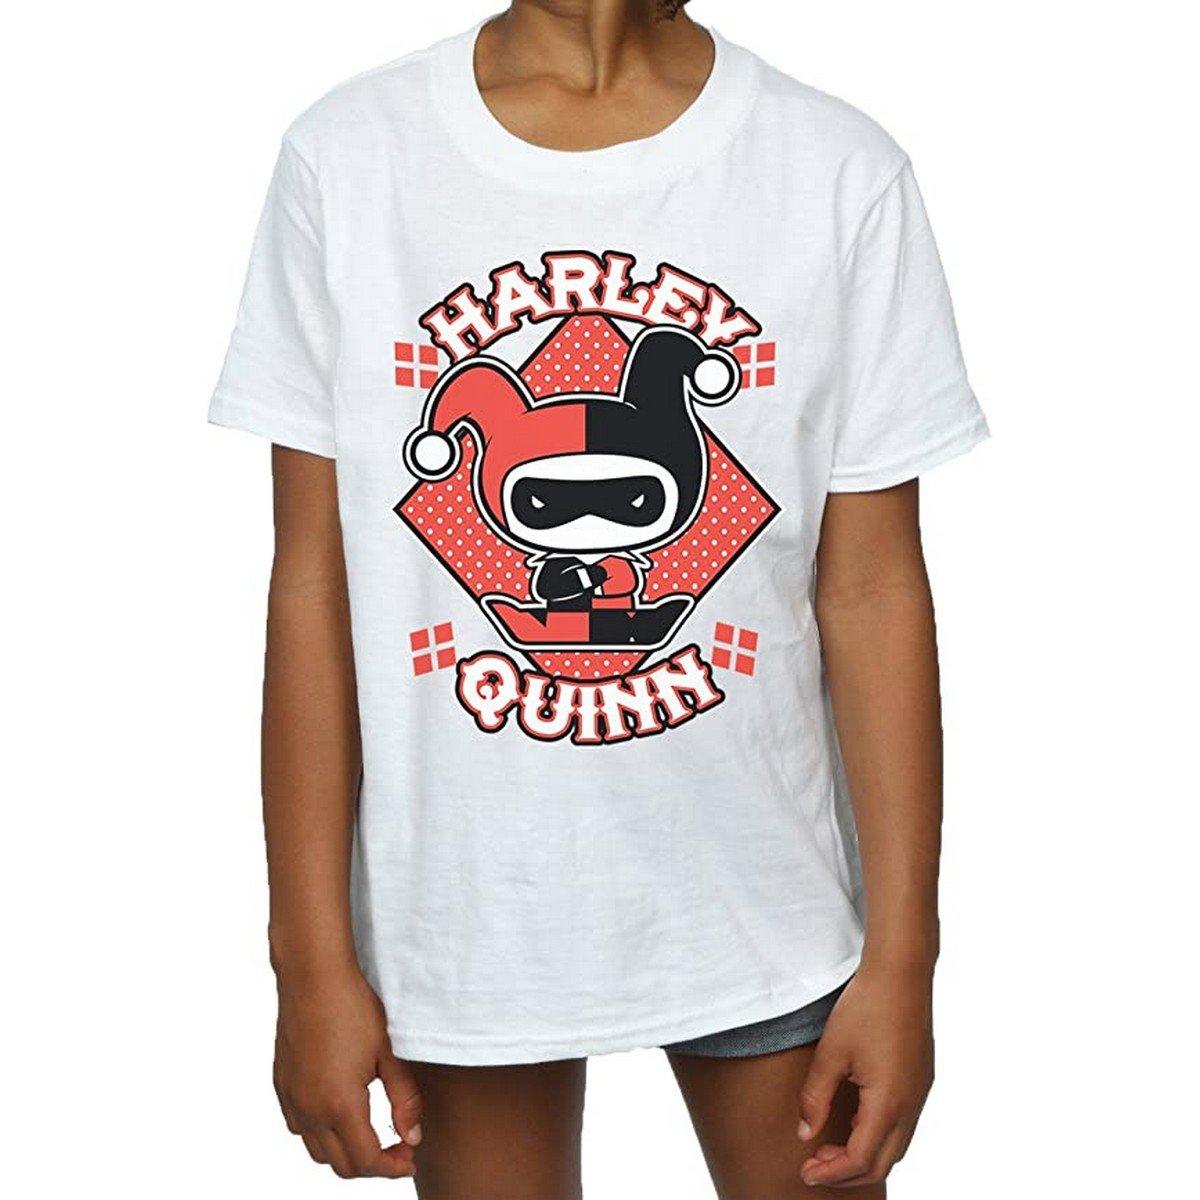 Tshirt Mädchen Weiss 152-158 von Harley Quinn